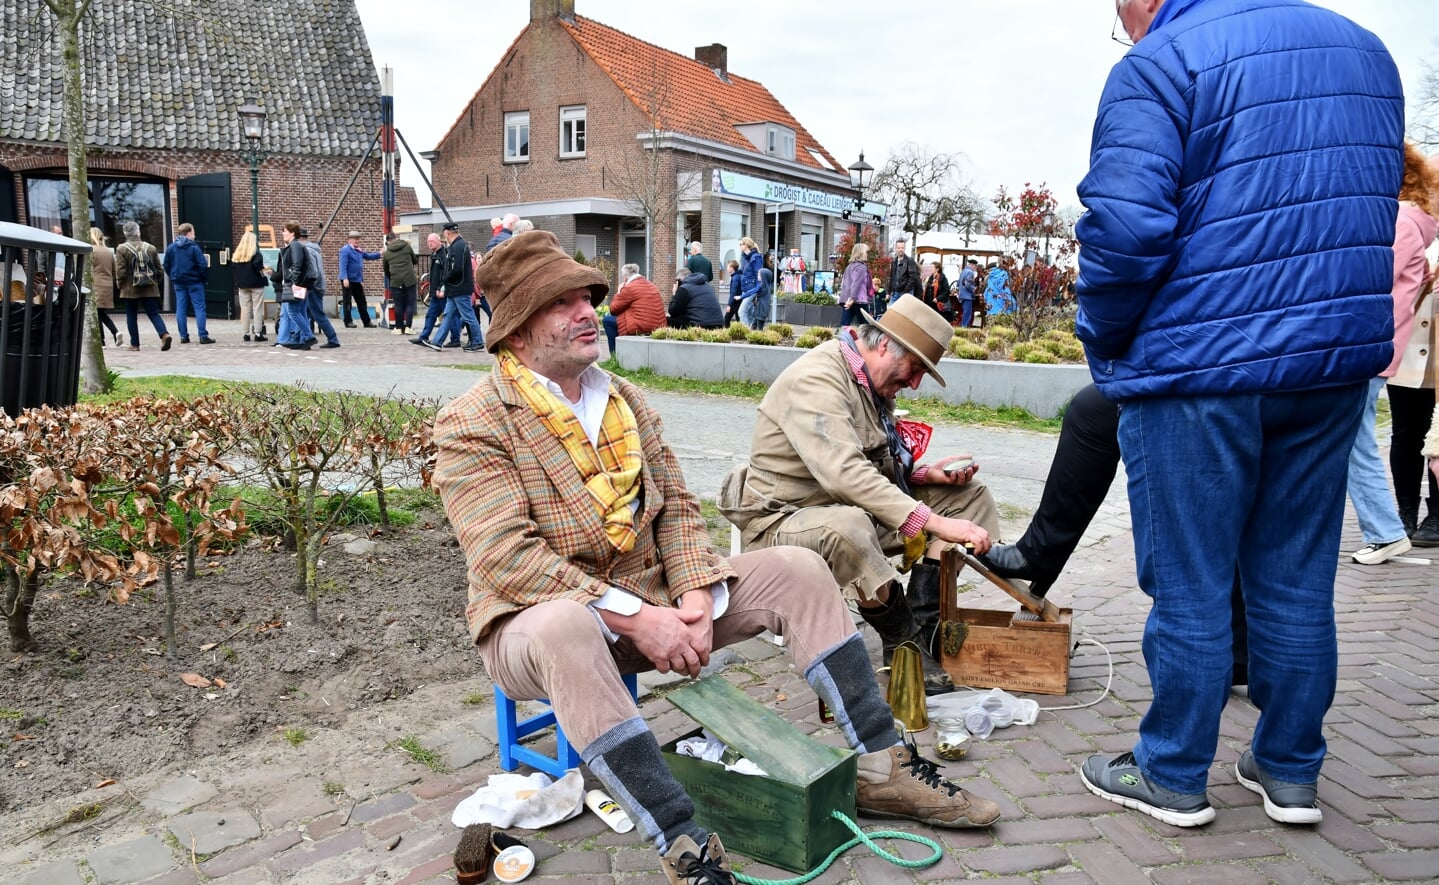 De Boeremèrt in Liempde trok maandag, tweede paasdag, weer veel publiek. Jong en oud vermaakte zich opperbest met de vele oude ambachten, spelletjes en activiteiten in de dorpskern.